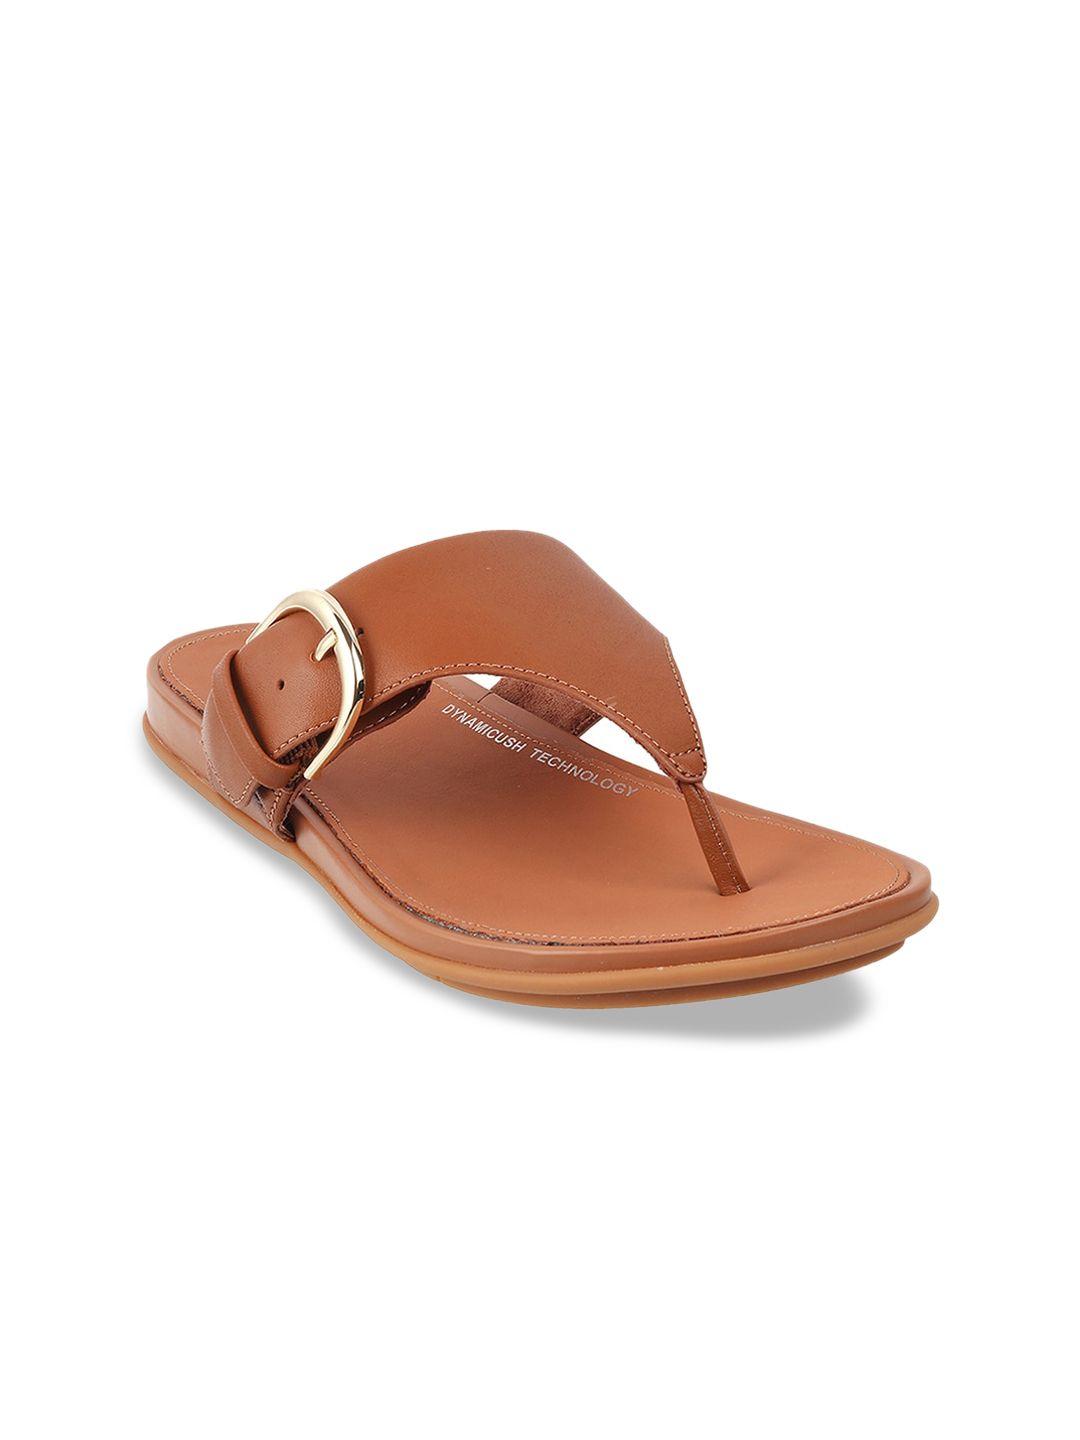 fitflop women tan leather open toe flats